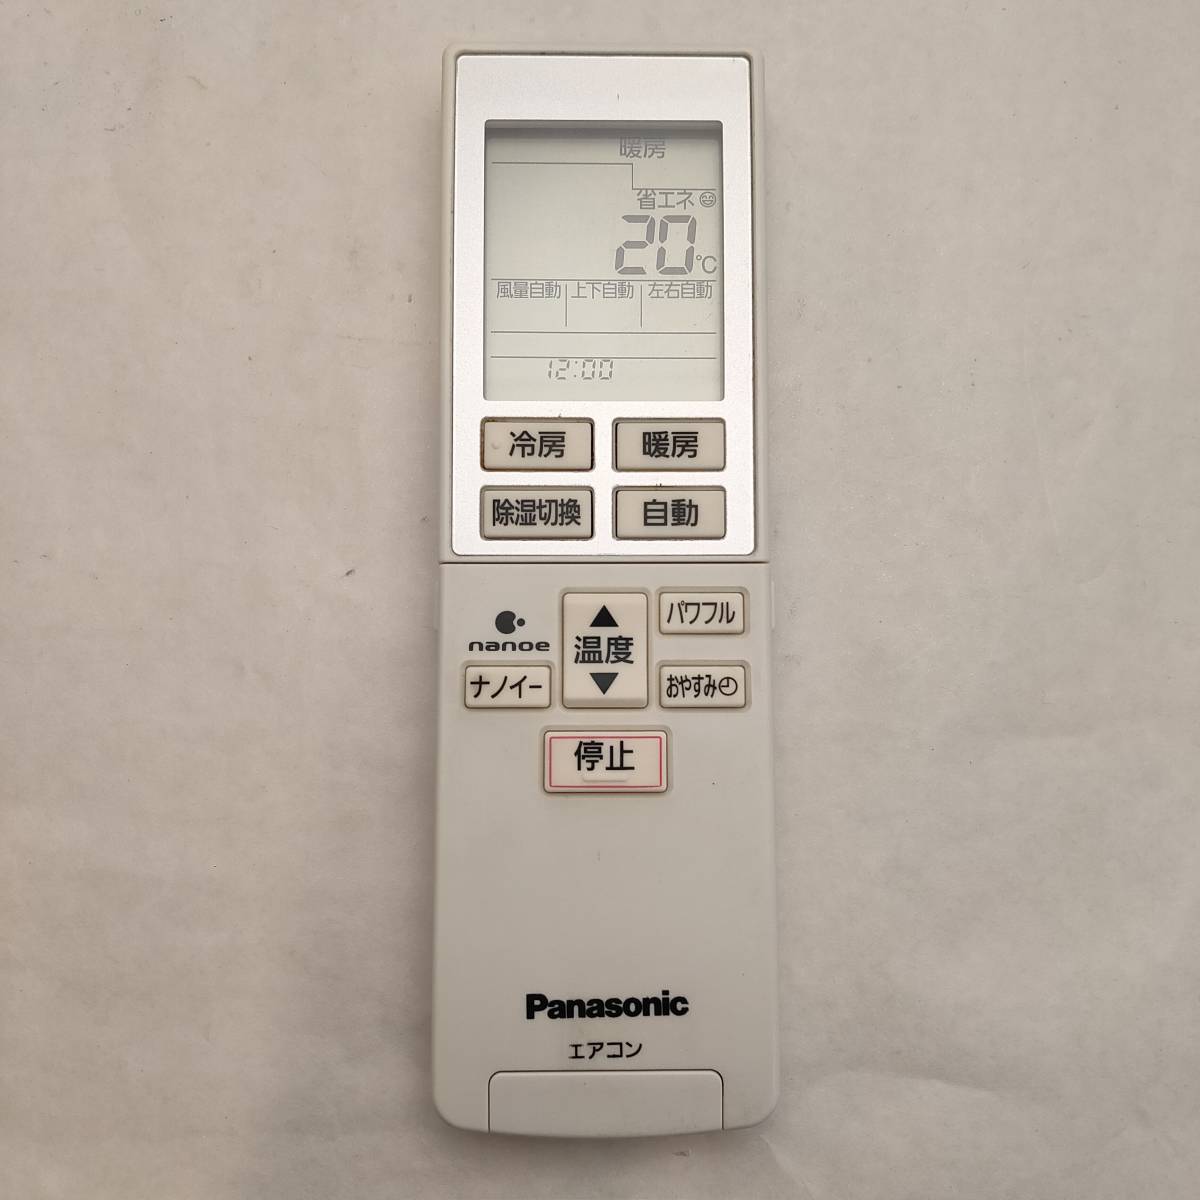 新登場 パナソニック Panasonic A75C3951 エアコンリモコン